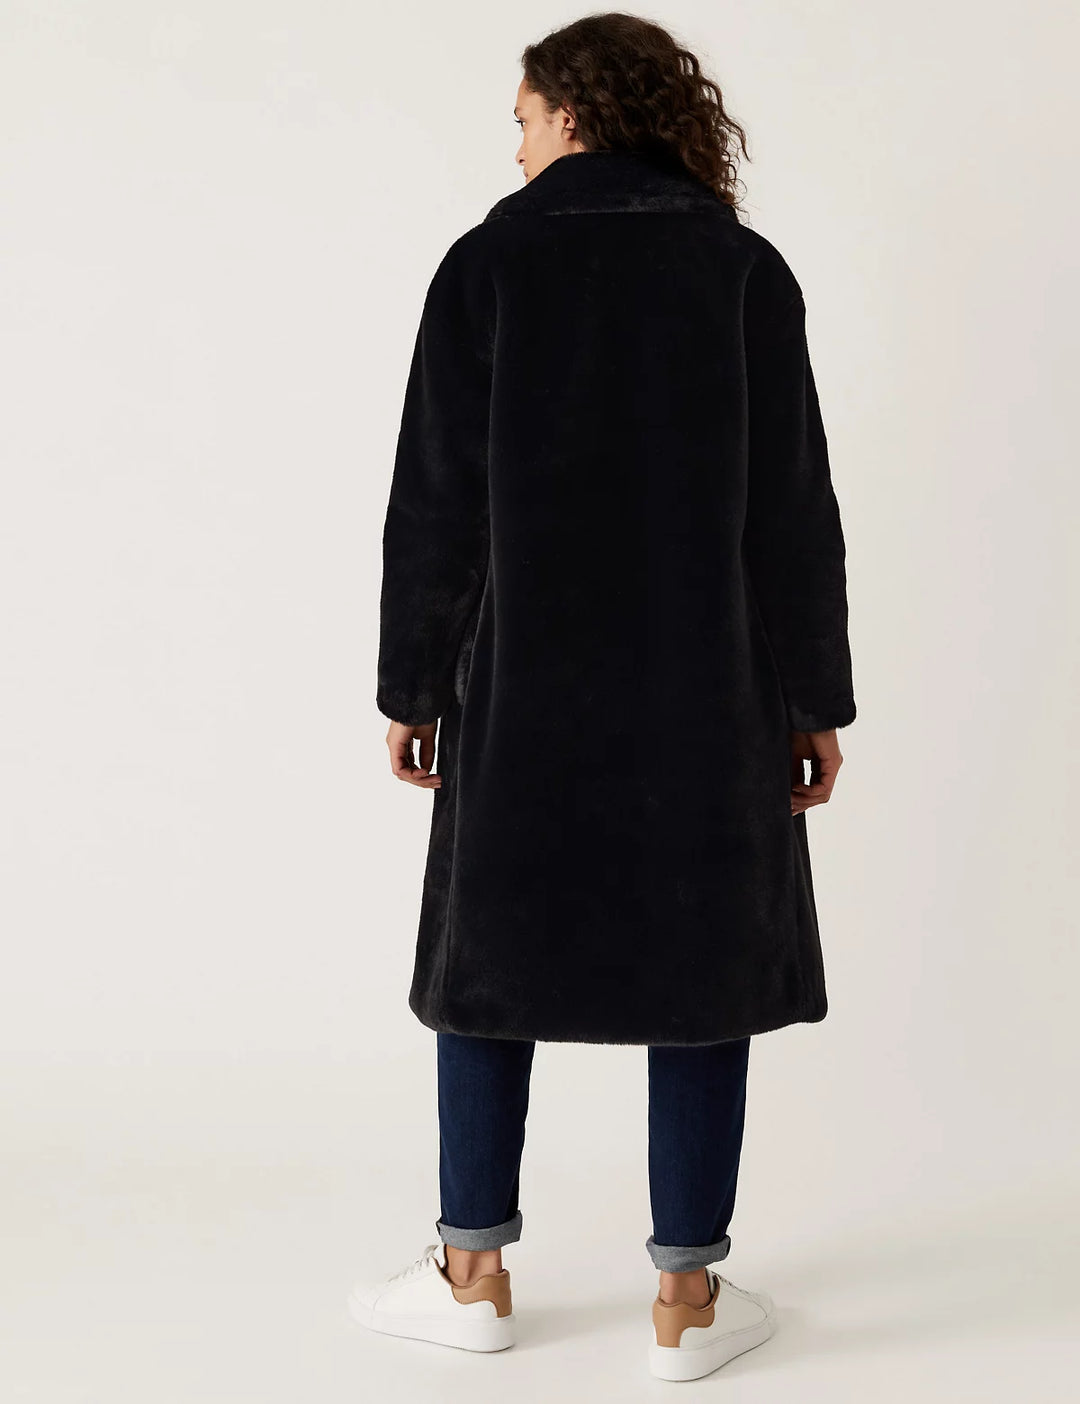 M&S Ladies Long Coat With Fur T59/1144C